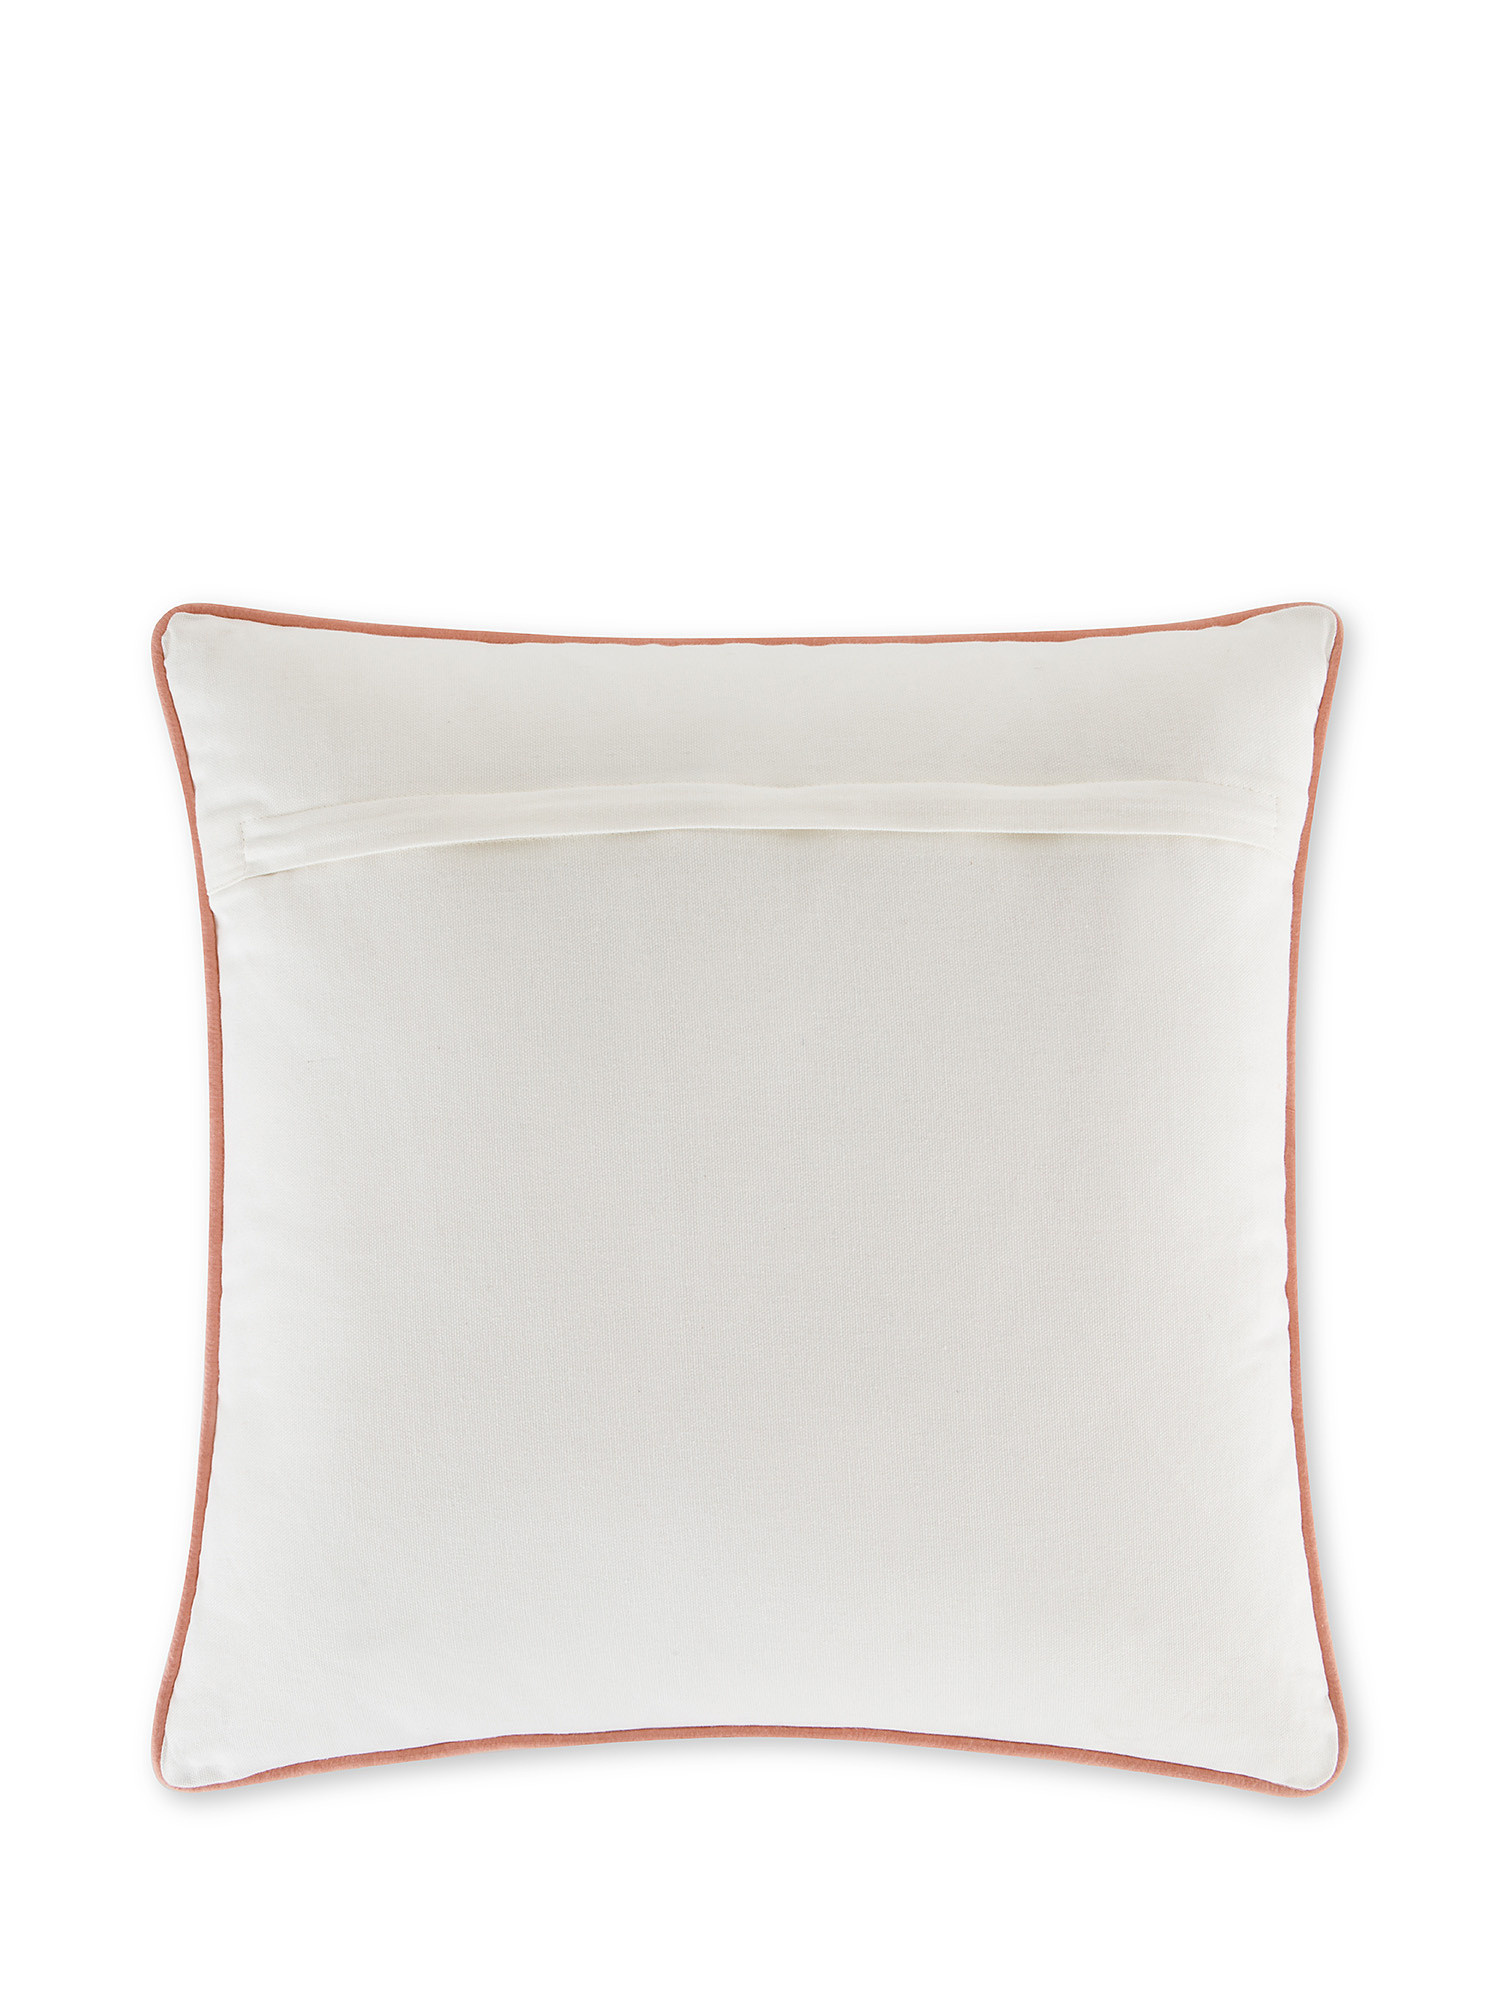 Marine embroidery cushion 45x45cm, White, large image number 1